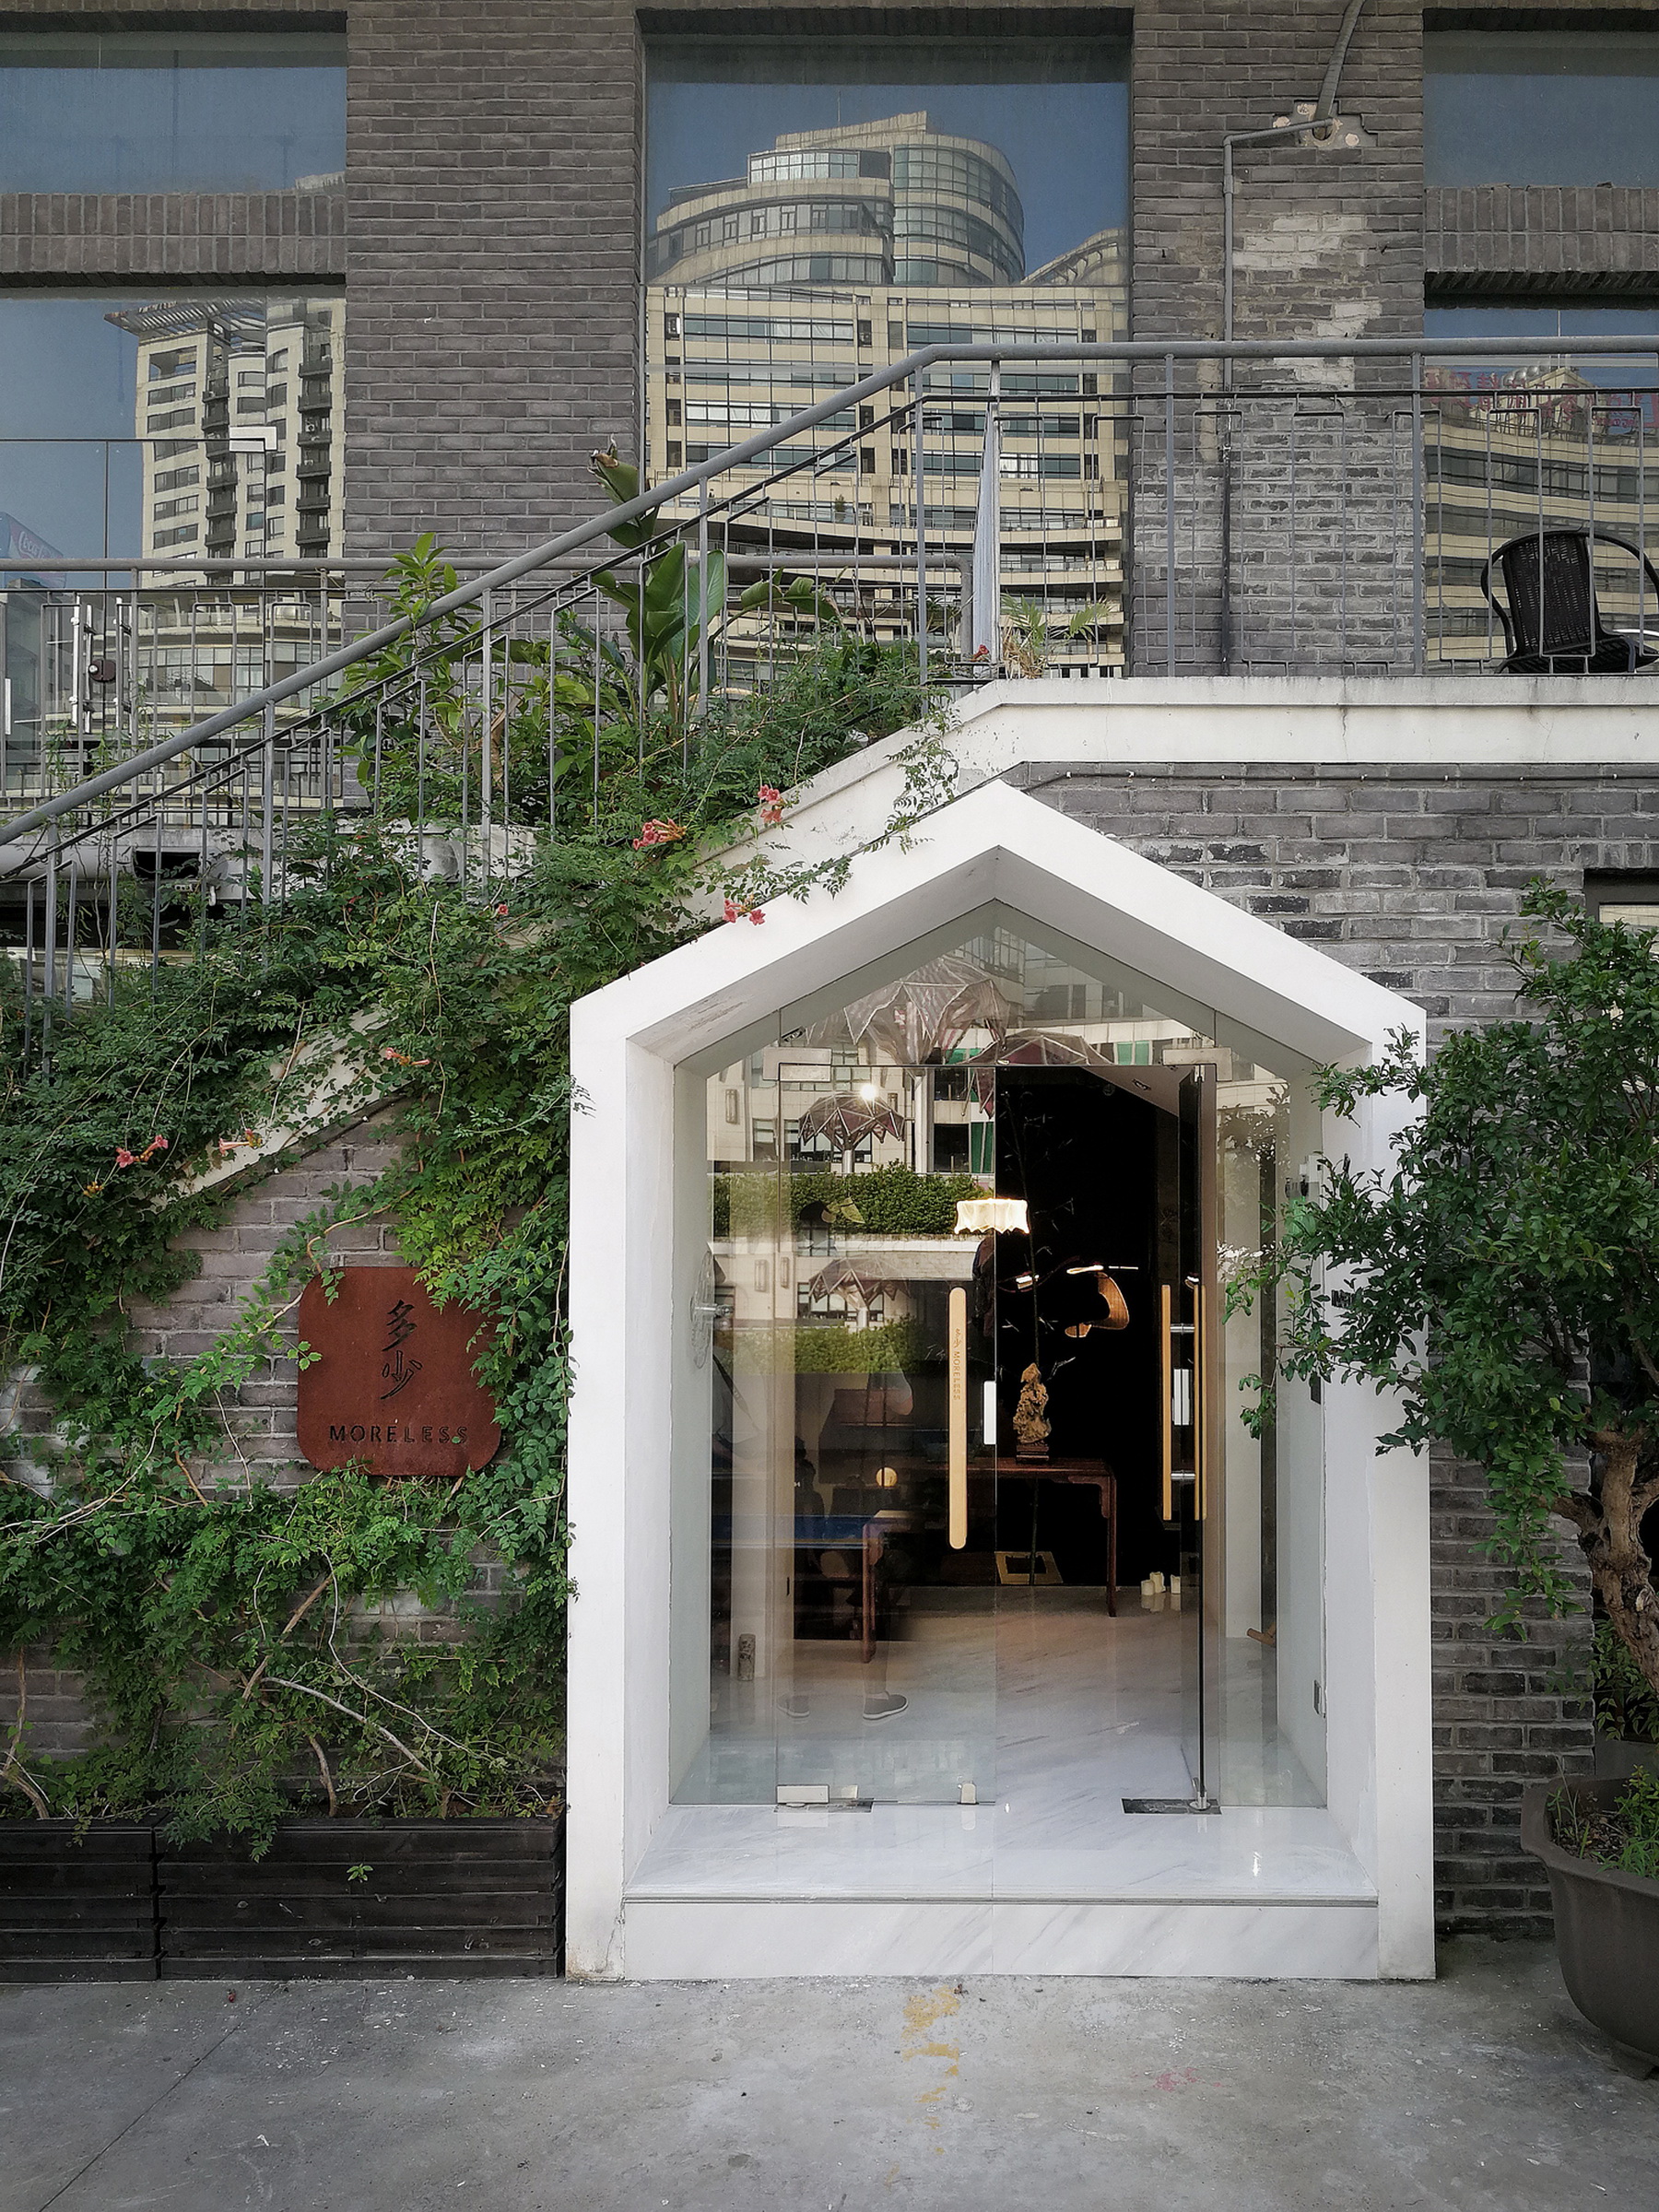 多少家具上海M50展厅扩建设计 / 上海善祥建筑设计有限公司